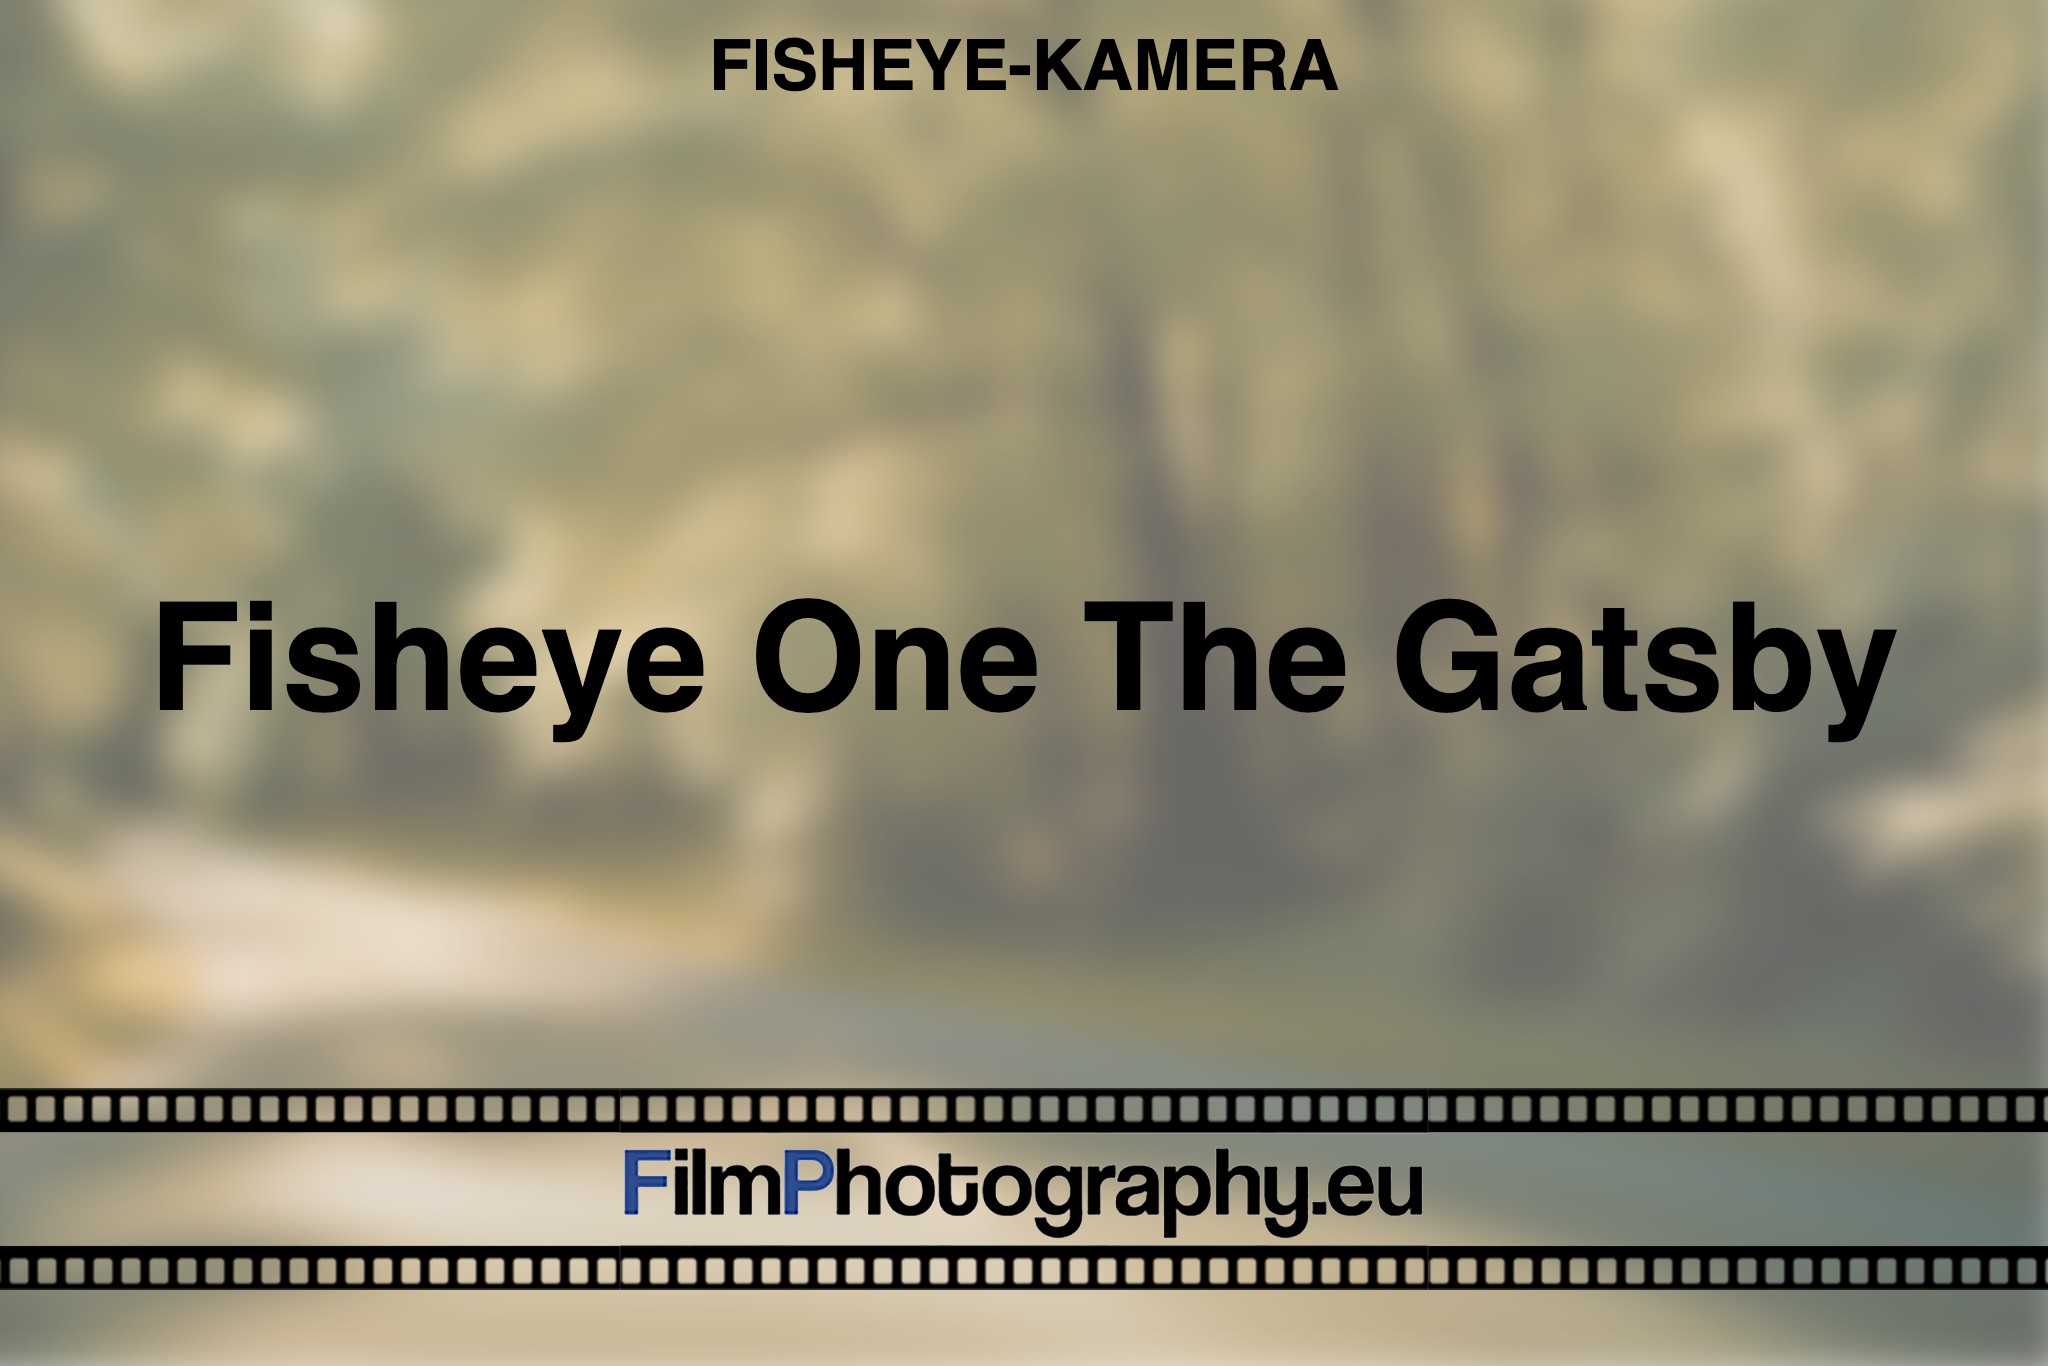 fisheye-one-the-gatsby-fisheye-kamera-bnv